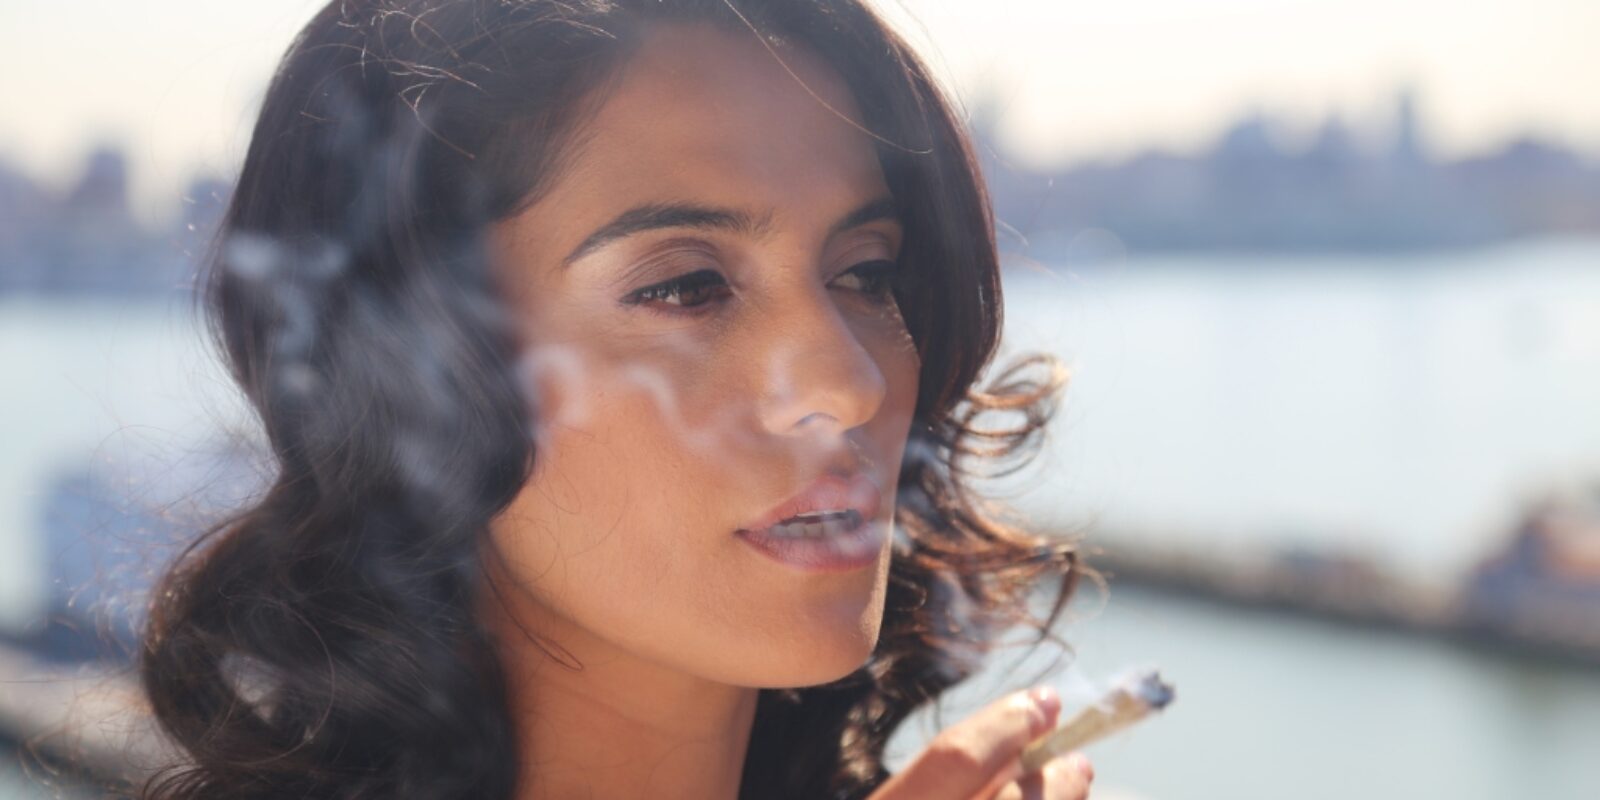 Woman smoking marijuana.